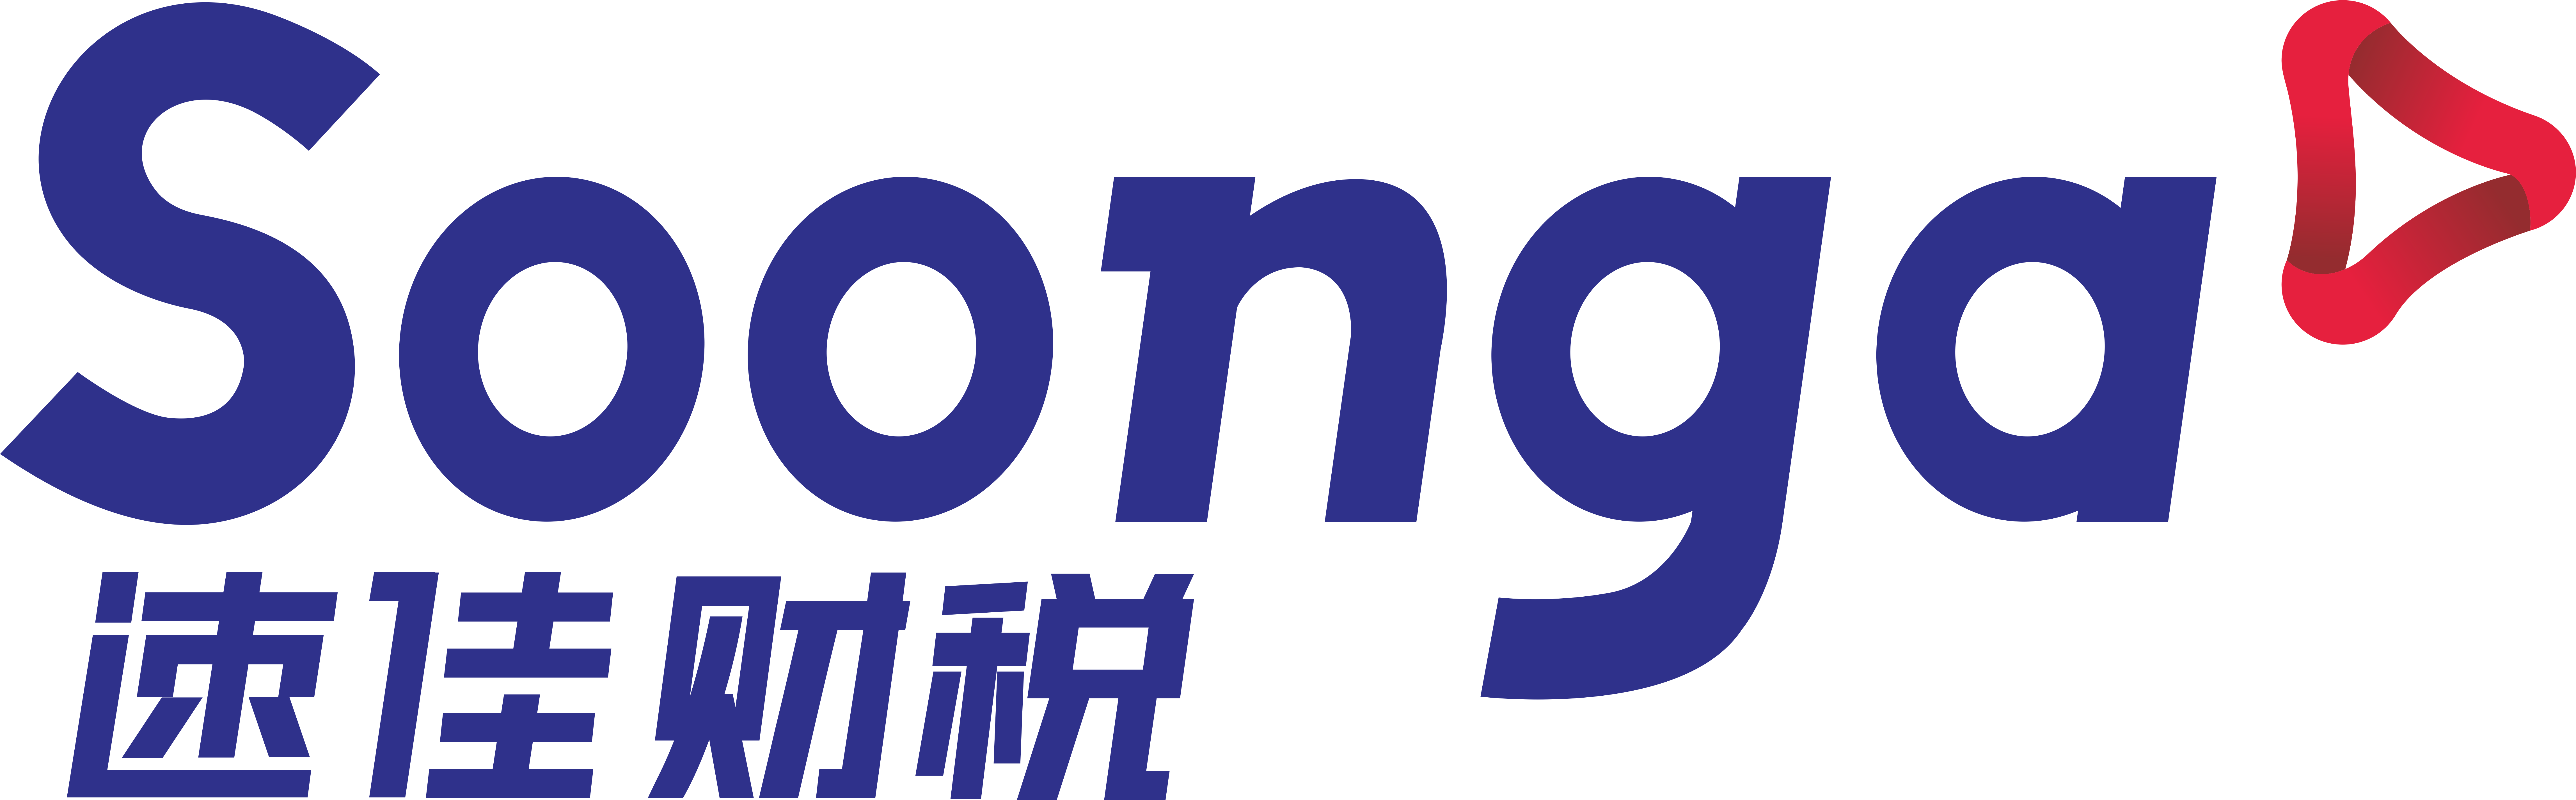 广西速佳企业管理集团有限公司logo,财税logo,企业logo,公司logo，